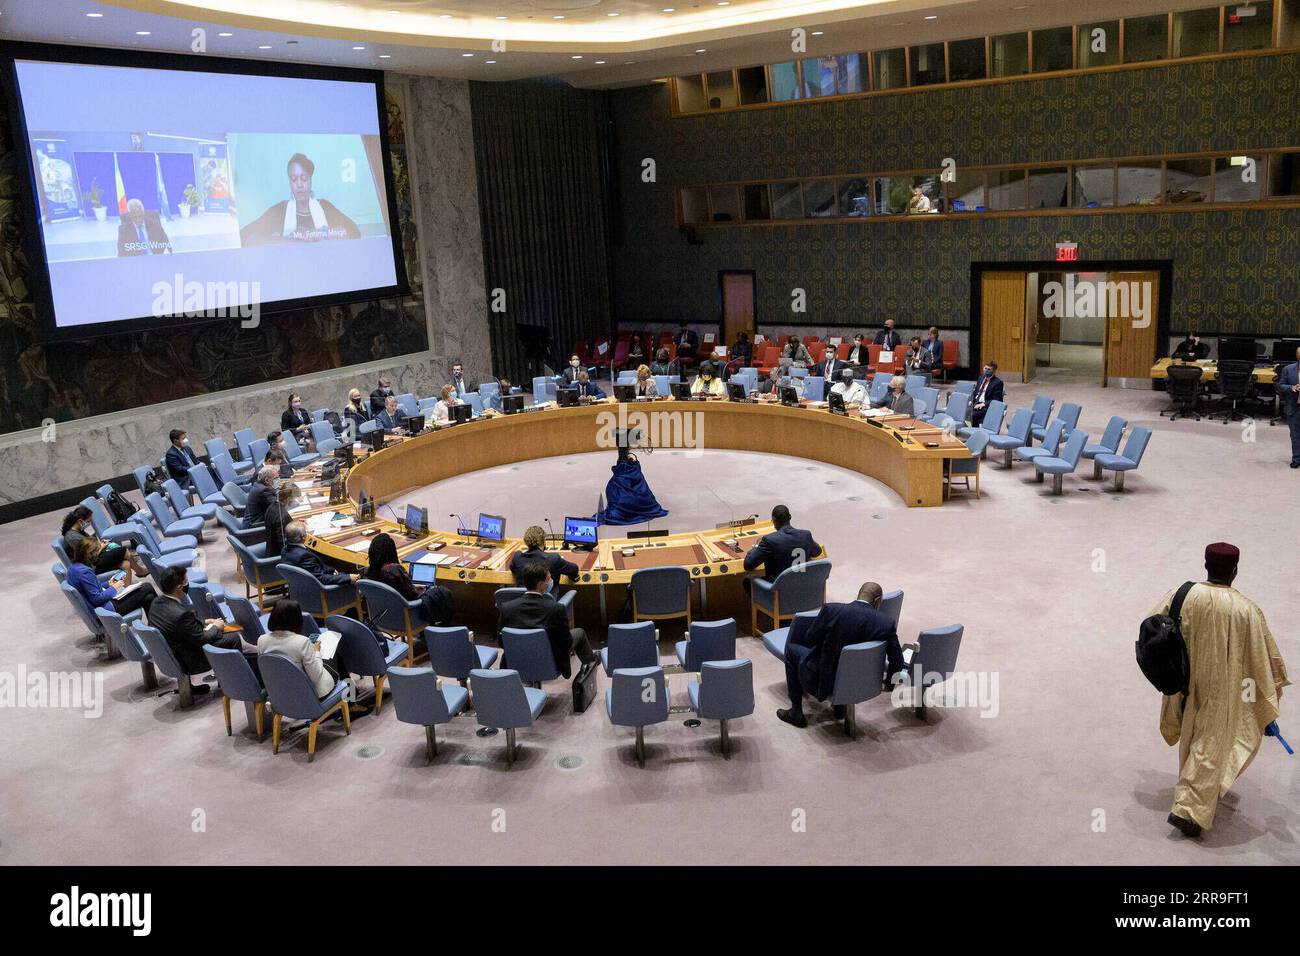 New York, UN-Sicherheitsrat New York, UN-Generalversammlung 210614 -- VEREINTEN NATIONEN, 14. Juni 2021 -- Foto aufgenommen am 14. Juni 2021 zeigt eine Sitzung des UN-Sicherheitsrats zur Lage in Mali am UN-Hauptsitz in New York. Es bedarf jetzt sofortiger Maßnahmen, um kritische Reformen einzuleiten und die Grundlage für glaubwürdige Wahlen in Mali zu schaffen, wo die Sicherheitslage so besorgniserregend wie eh und je ist, teilte der Leiter der multidimensionalen integrierten Stabilisierungsmission der Vereinten Nationen in Mali MINUSMA dem Sicherheitsrat am Montag mit. /Handout via Xinhua UN-SICHERHEITSRAT-MALI-SITUATION-MEETING EvanxSchneider/ Stockfoto